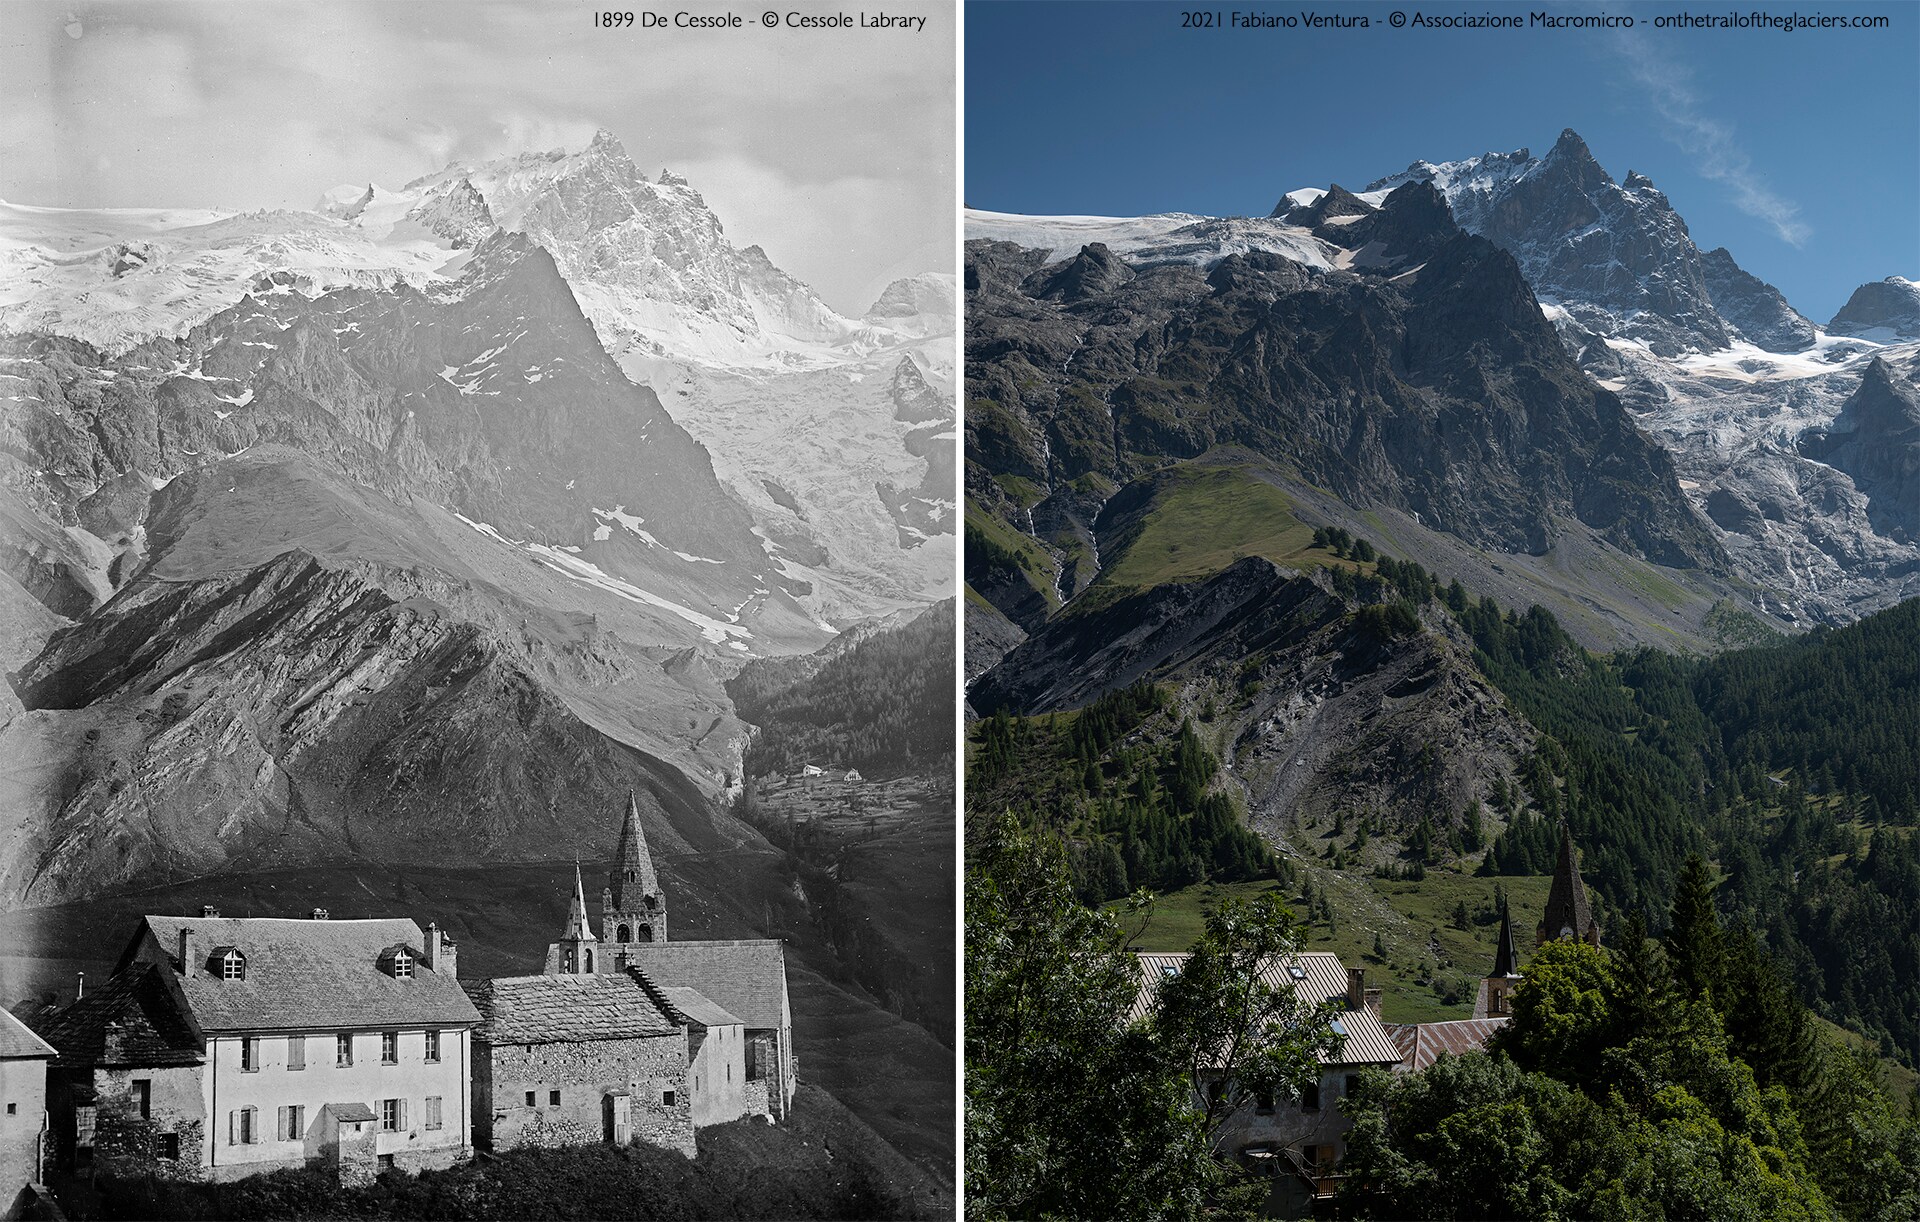 Sulle tracce dei ghiacciai - Alpi 2021